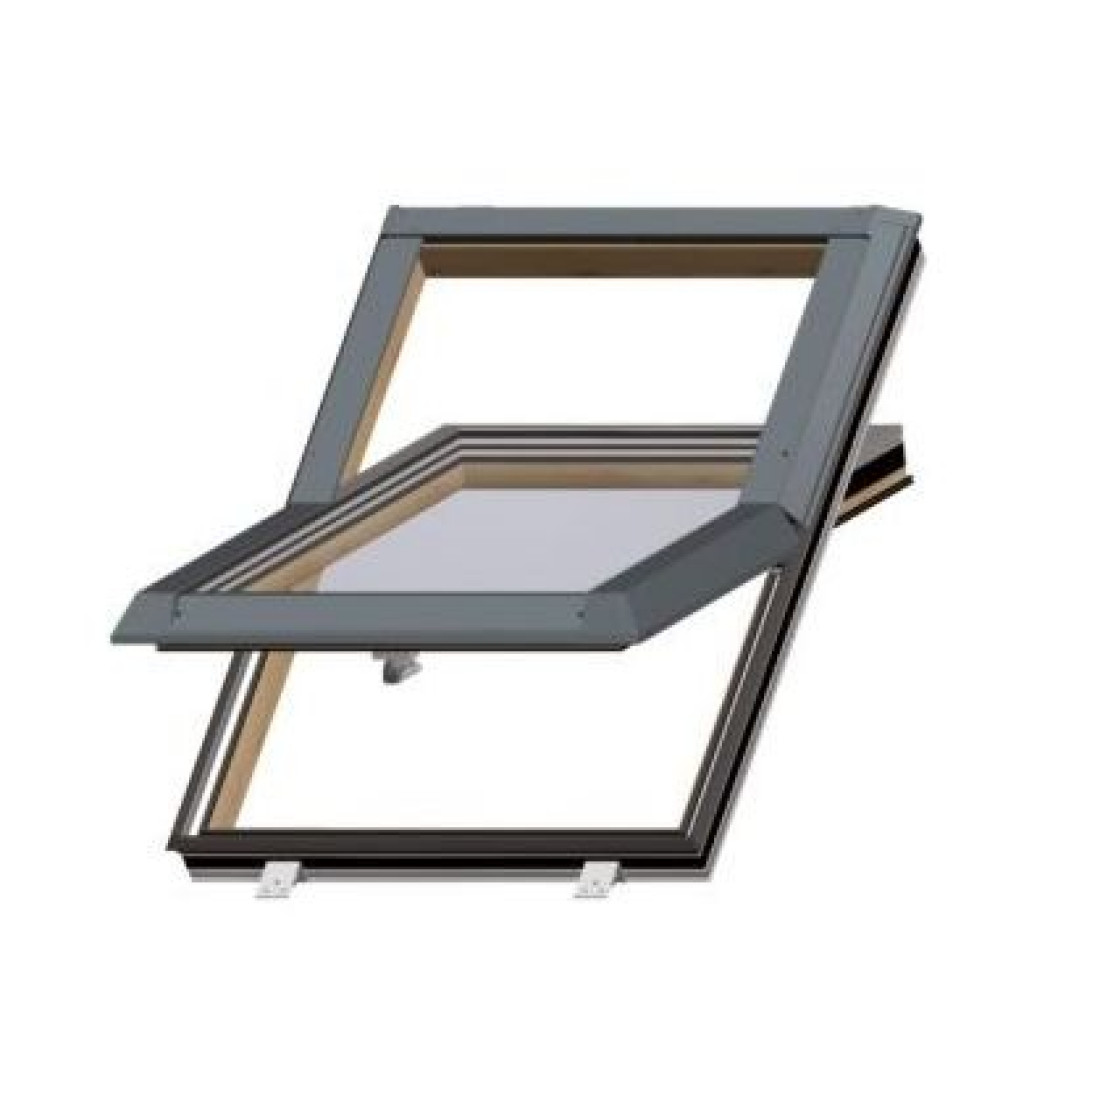 Aluminiowe okna dachowe Alusky innowacja wśród okien dachowych